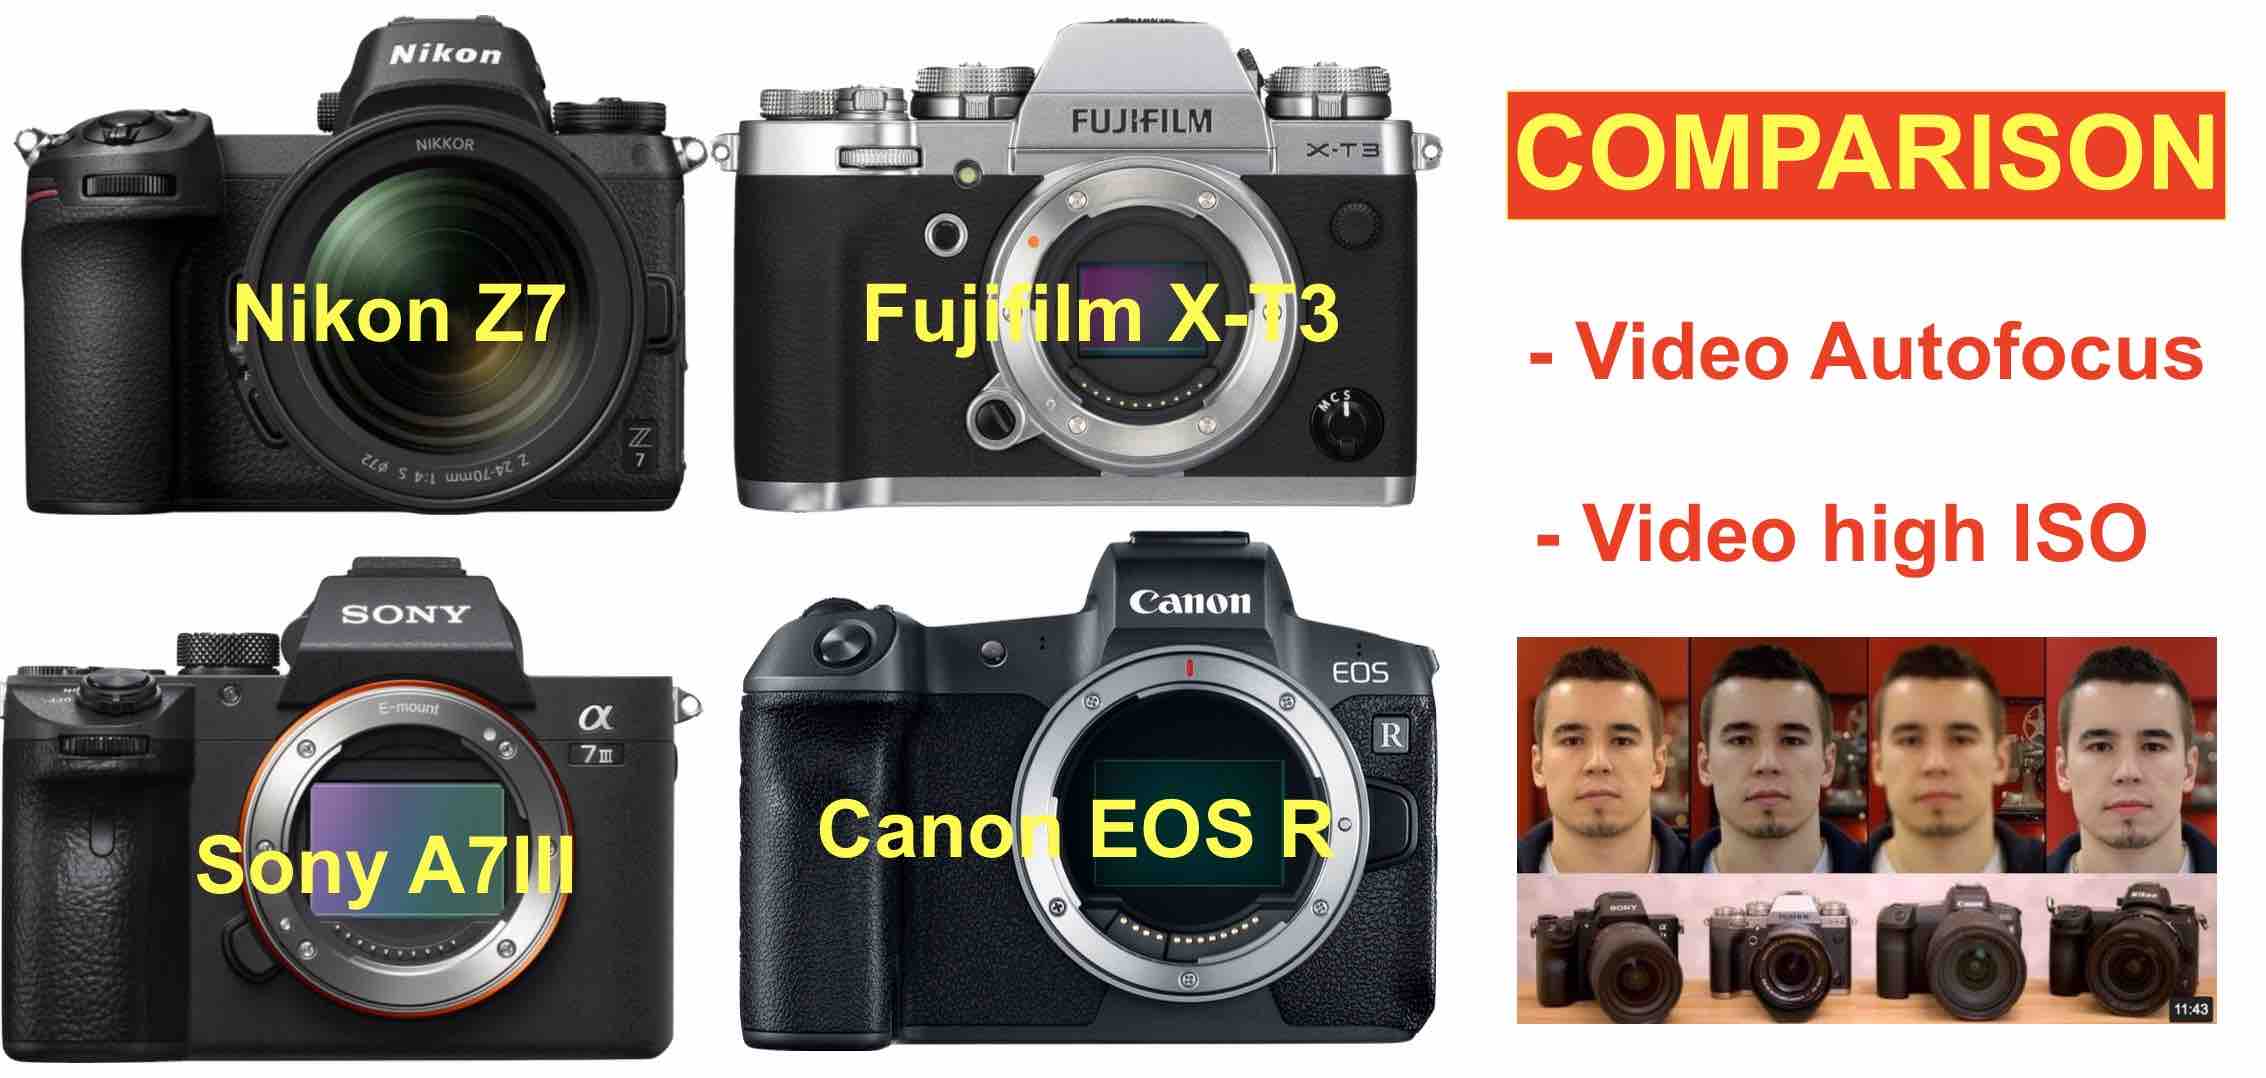 Fujifilm X-T3 vs Sony A7III, Nikon Z7, Canon Video Autofocus and High ISO Comparison Fuji Rumors